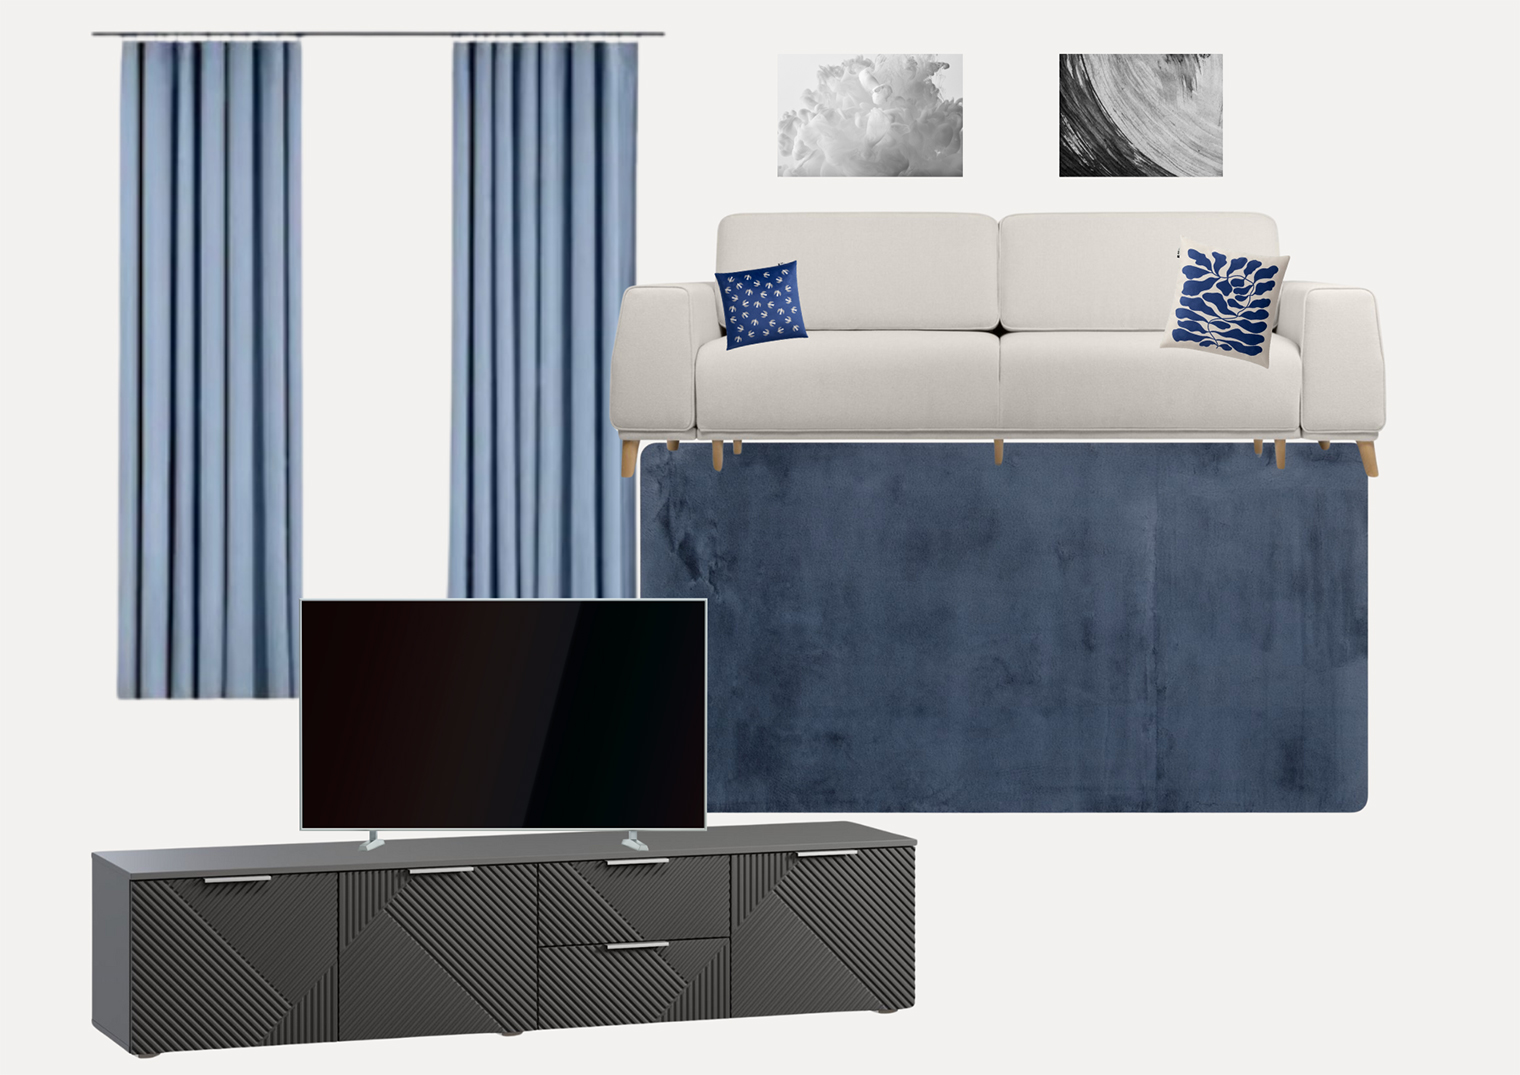 Еще сюда можно добавить чуть⁠-⁠чуть темного — например, картины над диваном, чтобы сбалансировать тумбу и телевизор